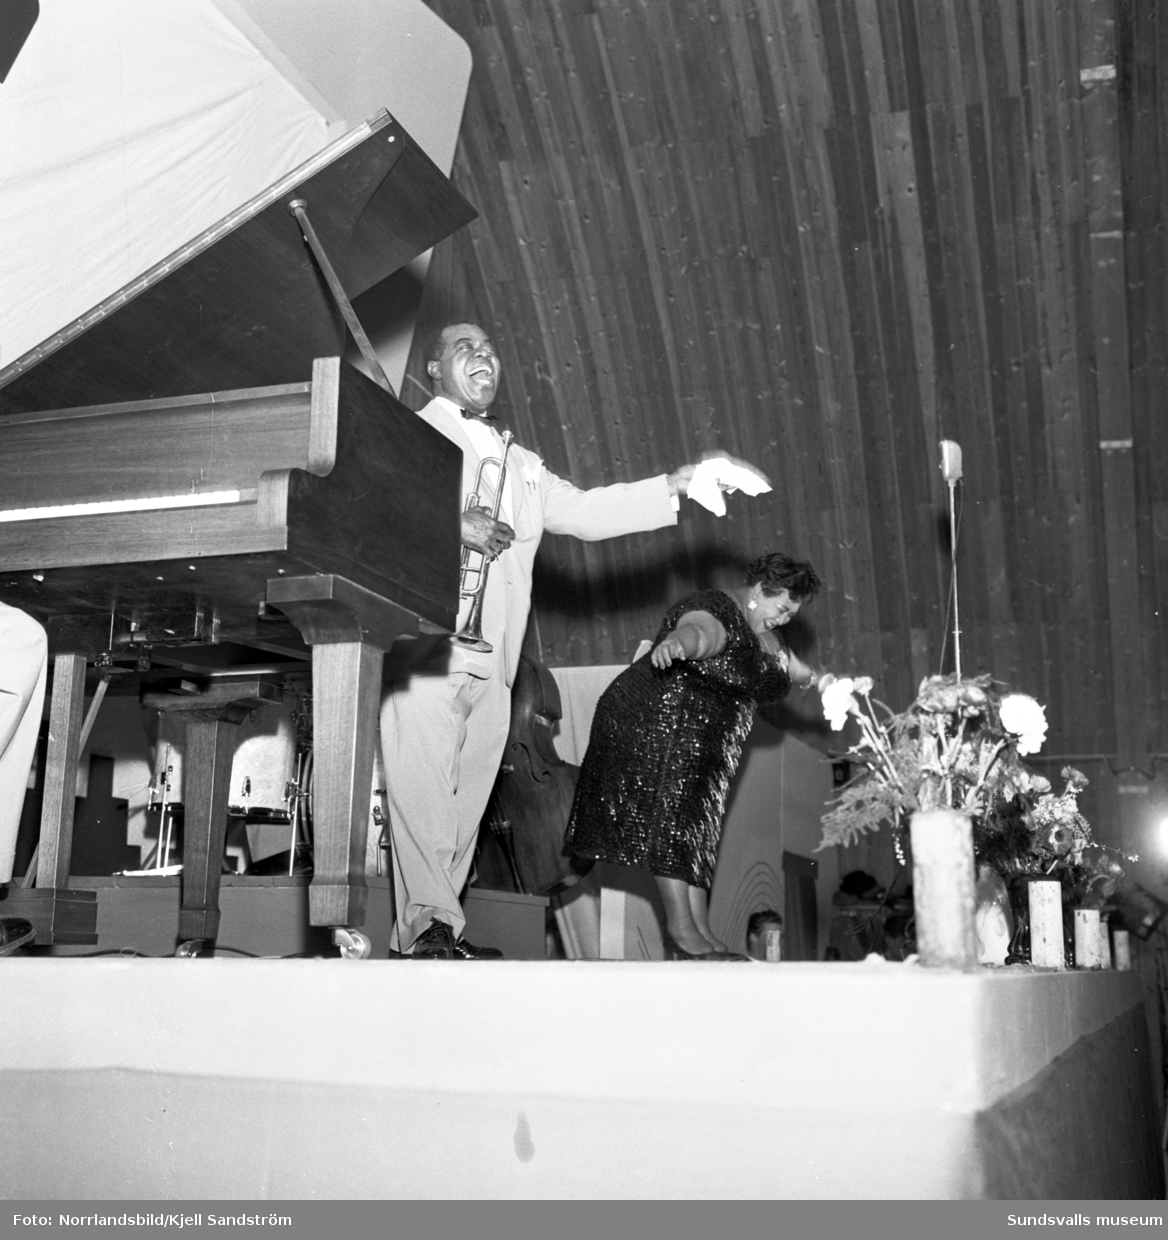 Louis Armstrong uppträdde i pjäshallen på LV5 i bister vinterkyla och dåligt uppvärmd lokal. 3600 påpälsade personer såg världsstjärnan hålla ångan uppe och han lämnade scenen i bara skjortärmarna då de två föreställningarna var över.